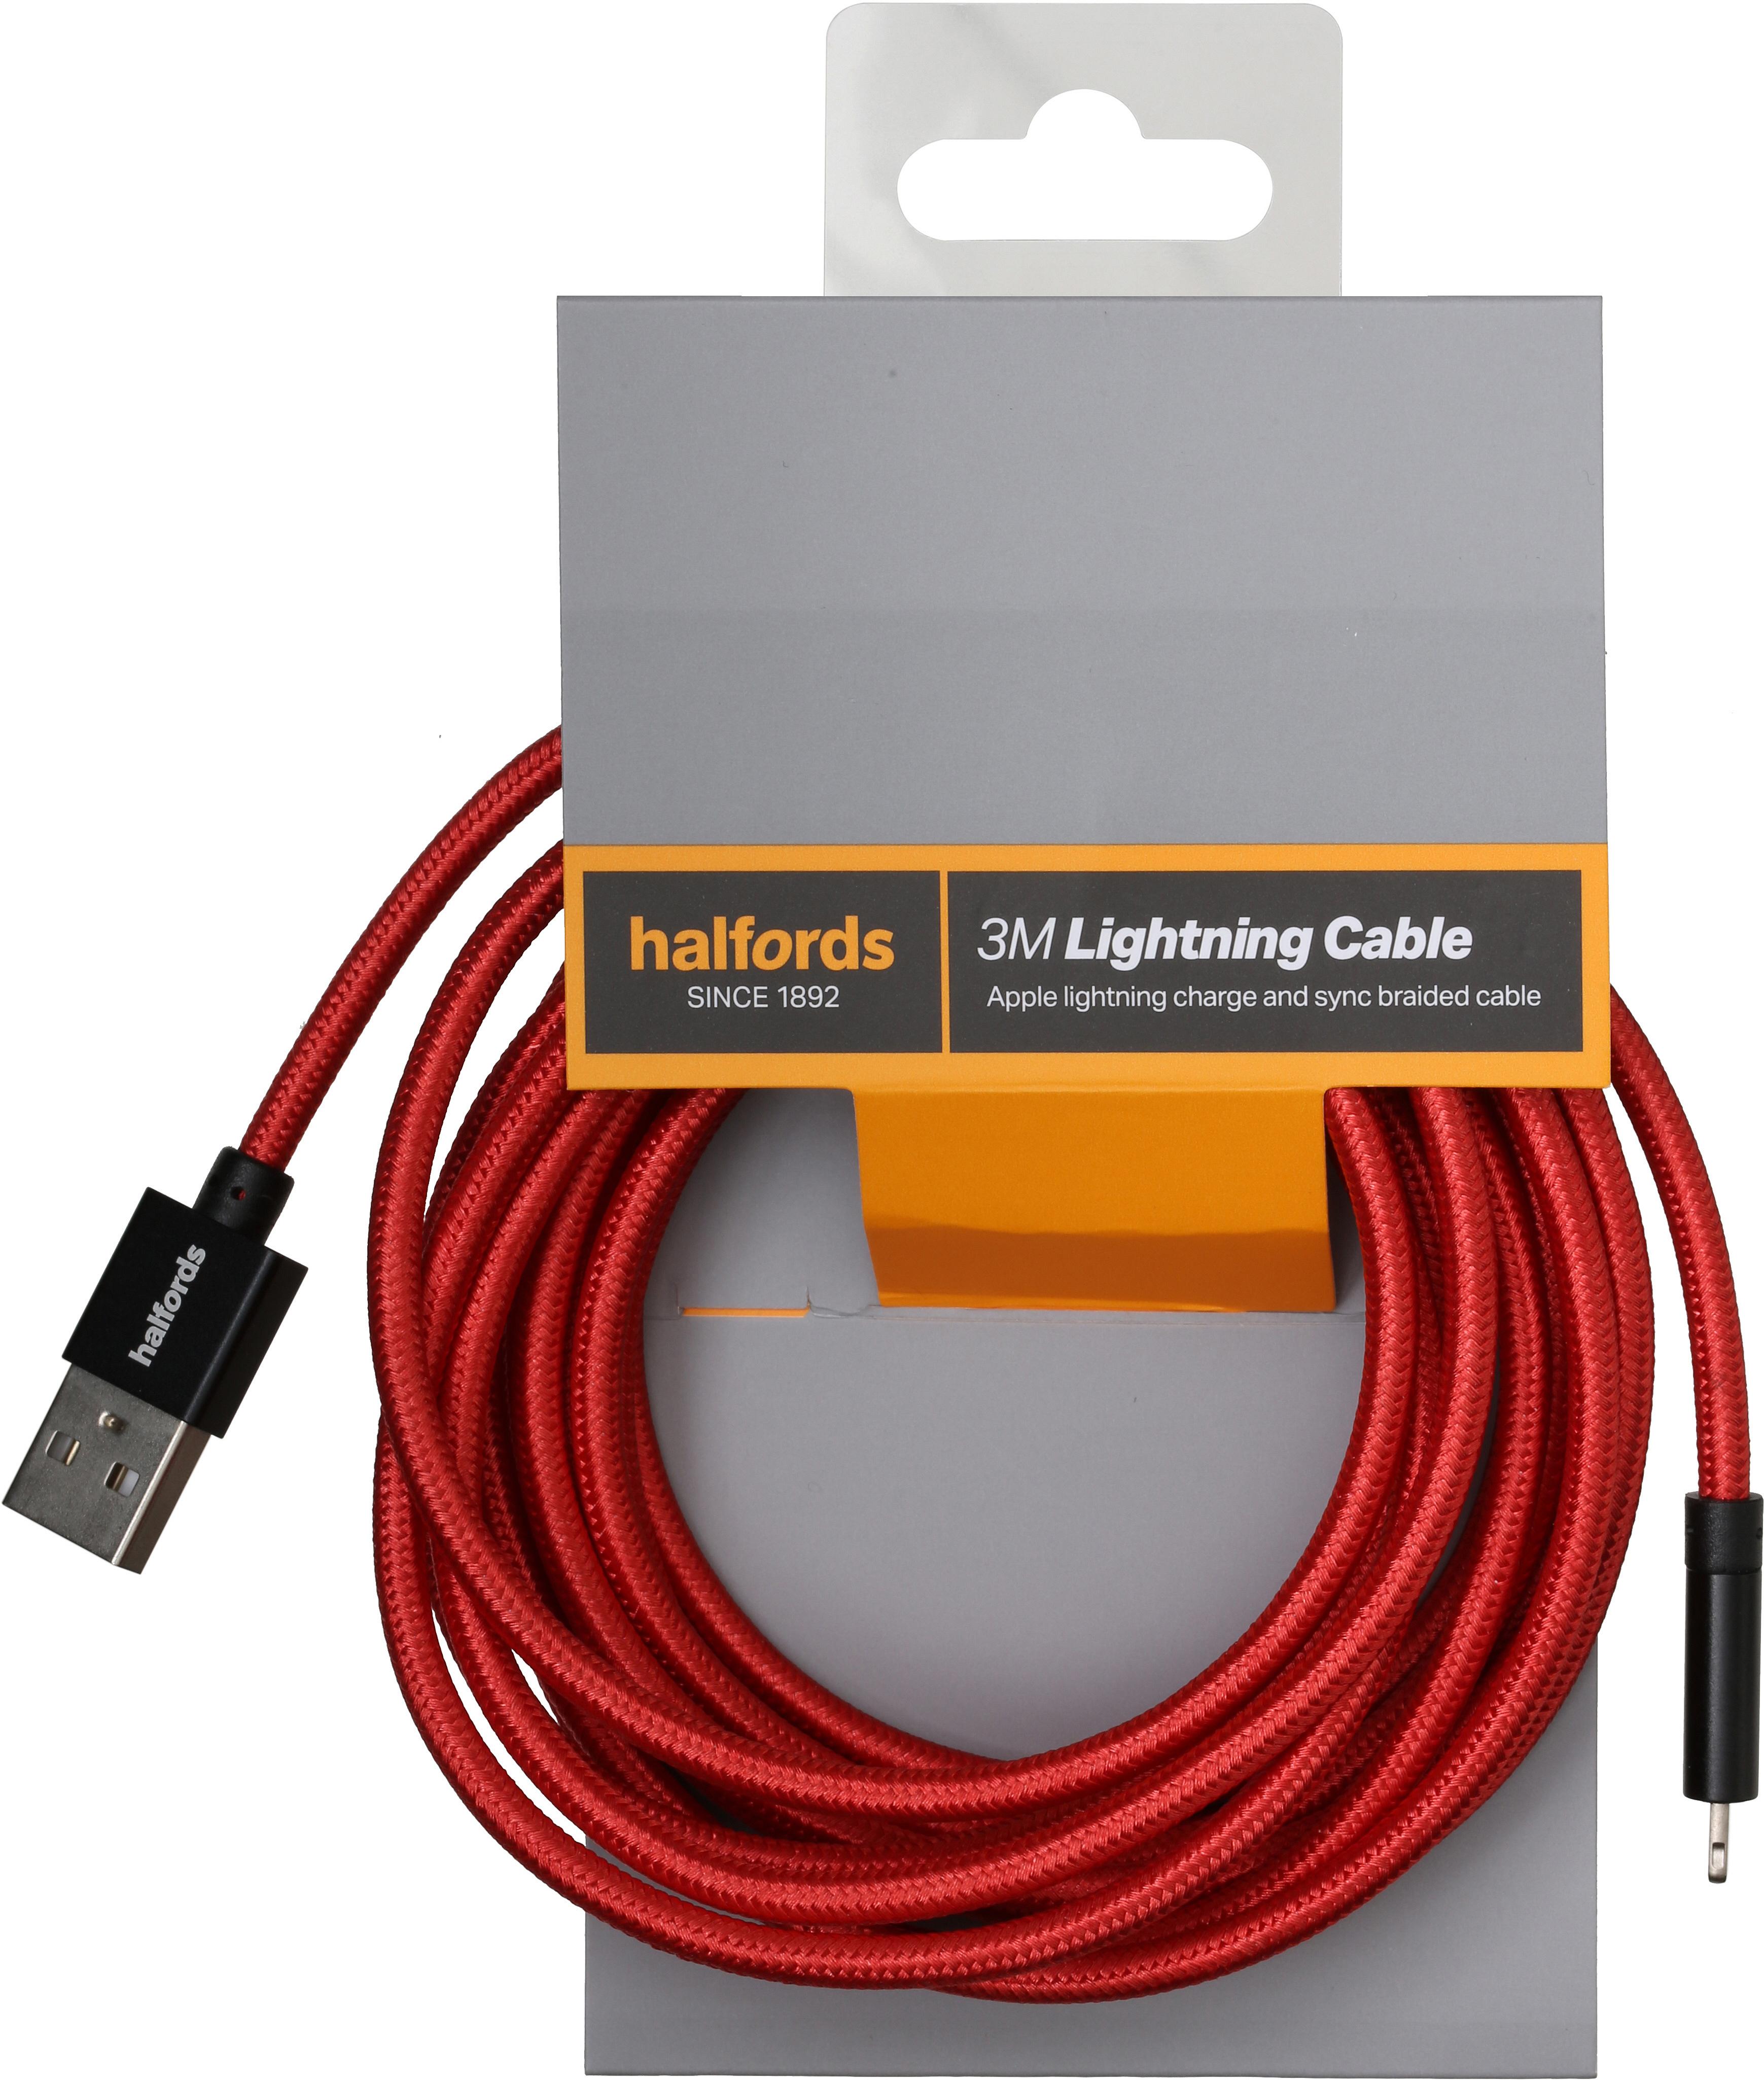 Halfords 3M Lightning Cable Black/Red